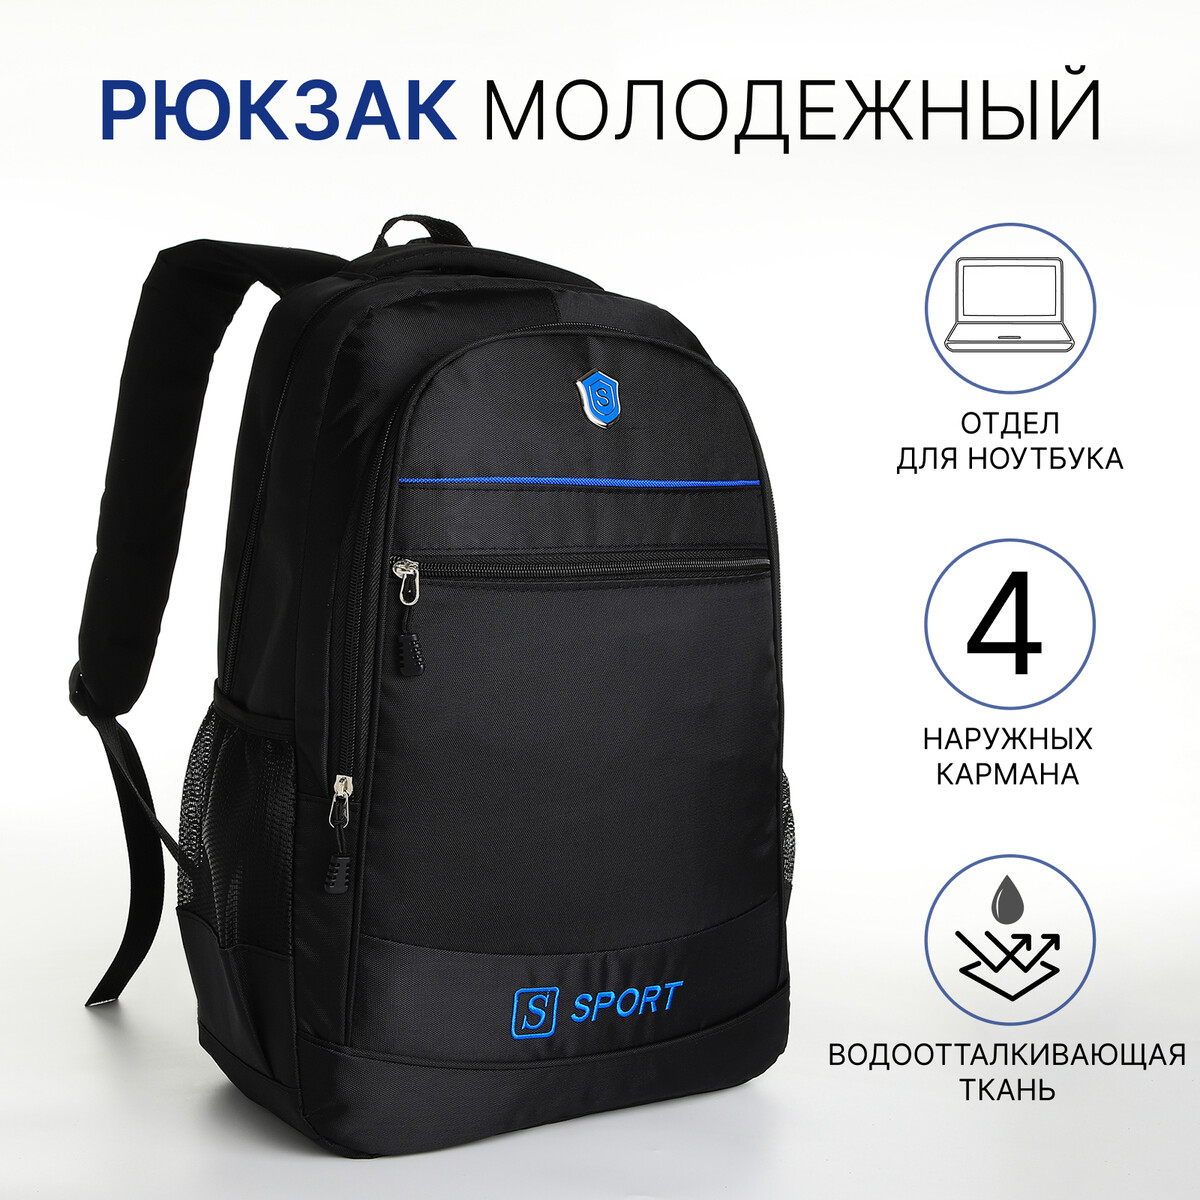 Рюкзак молодежный из текстиля на молнии, 4 карманов, цвет черный/синий